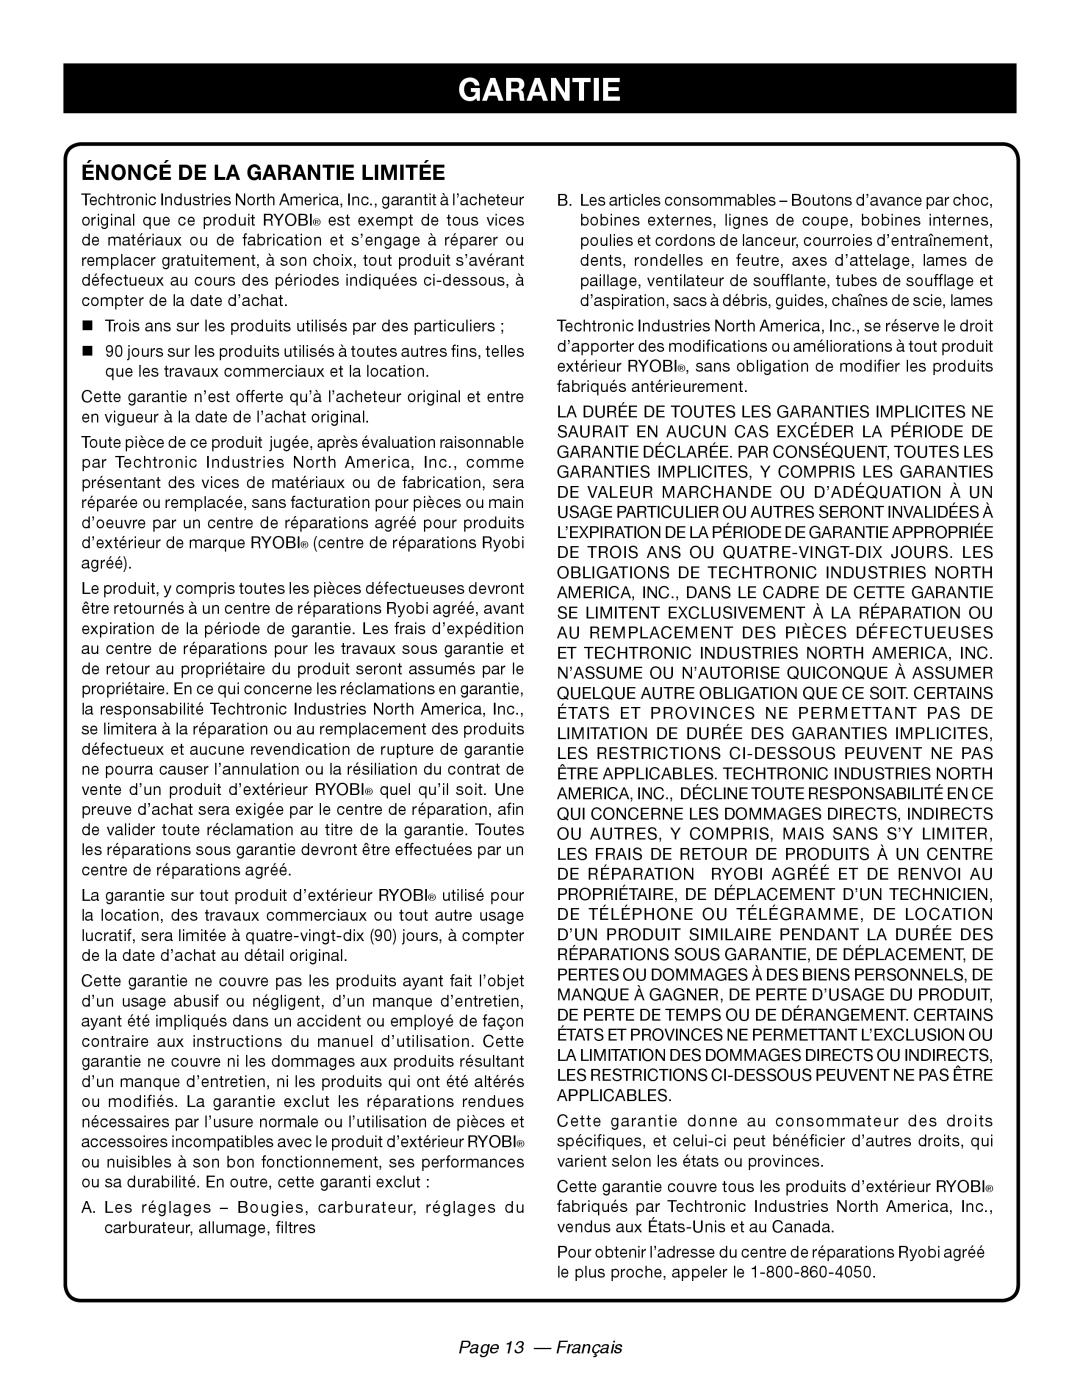 Ryobi RY44140 manuel dutilisation Énoncé De La Garantie Limitée, Page 13 - Français 